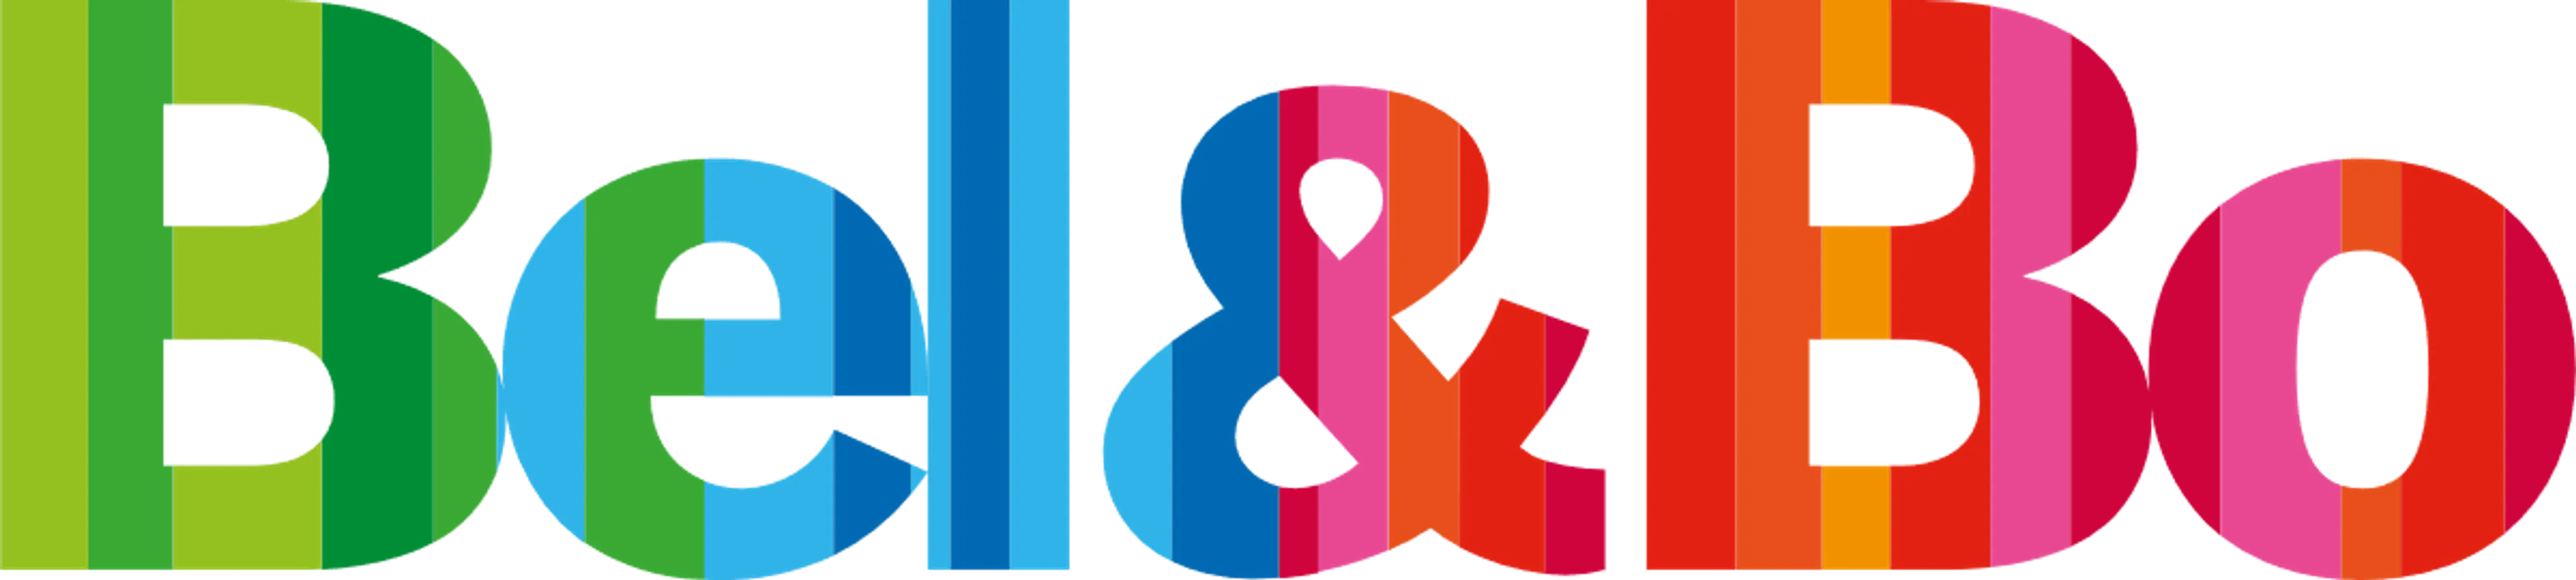 BEL&BO logo